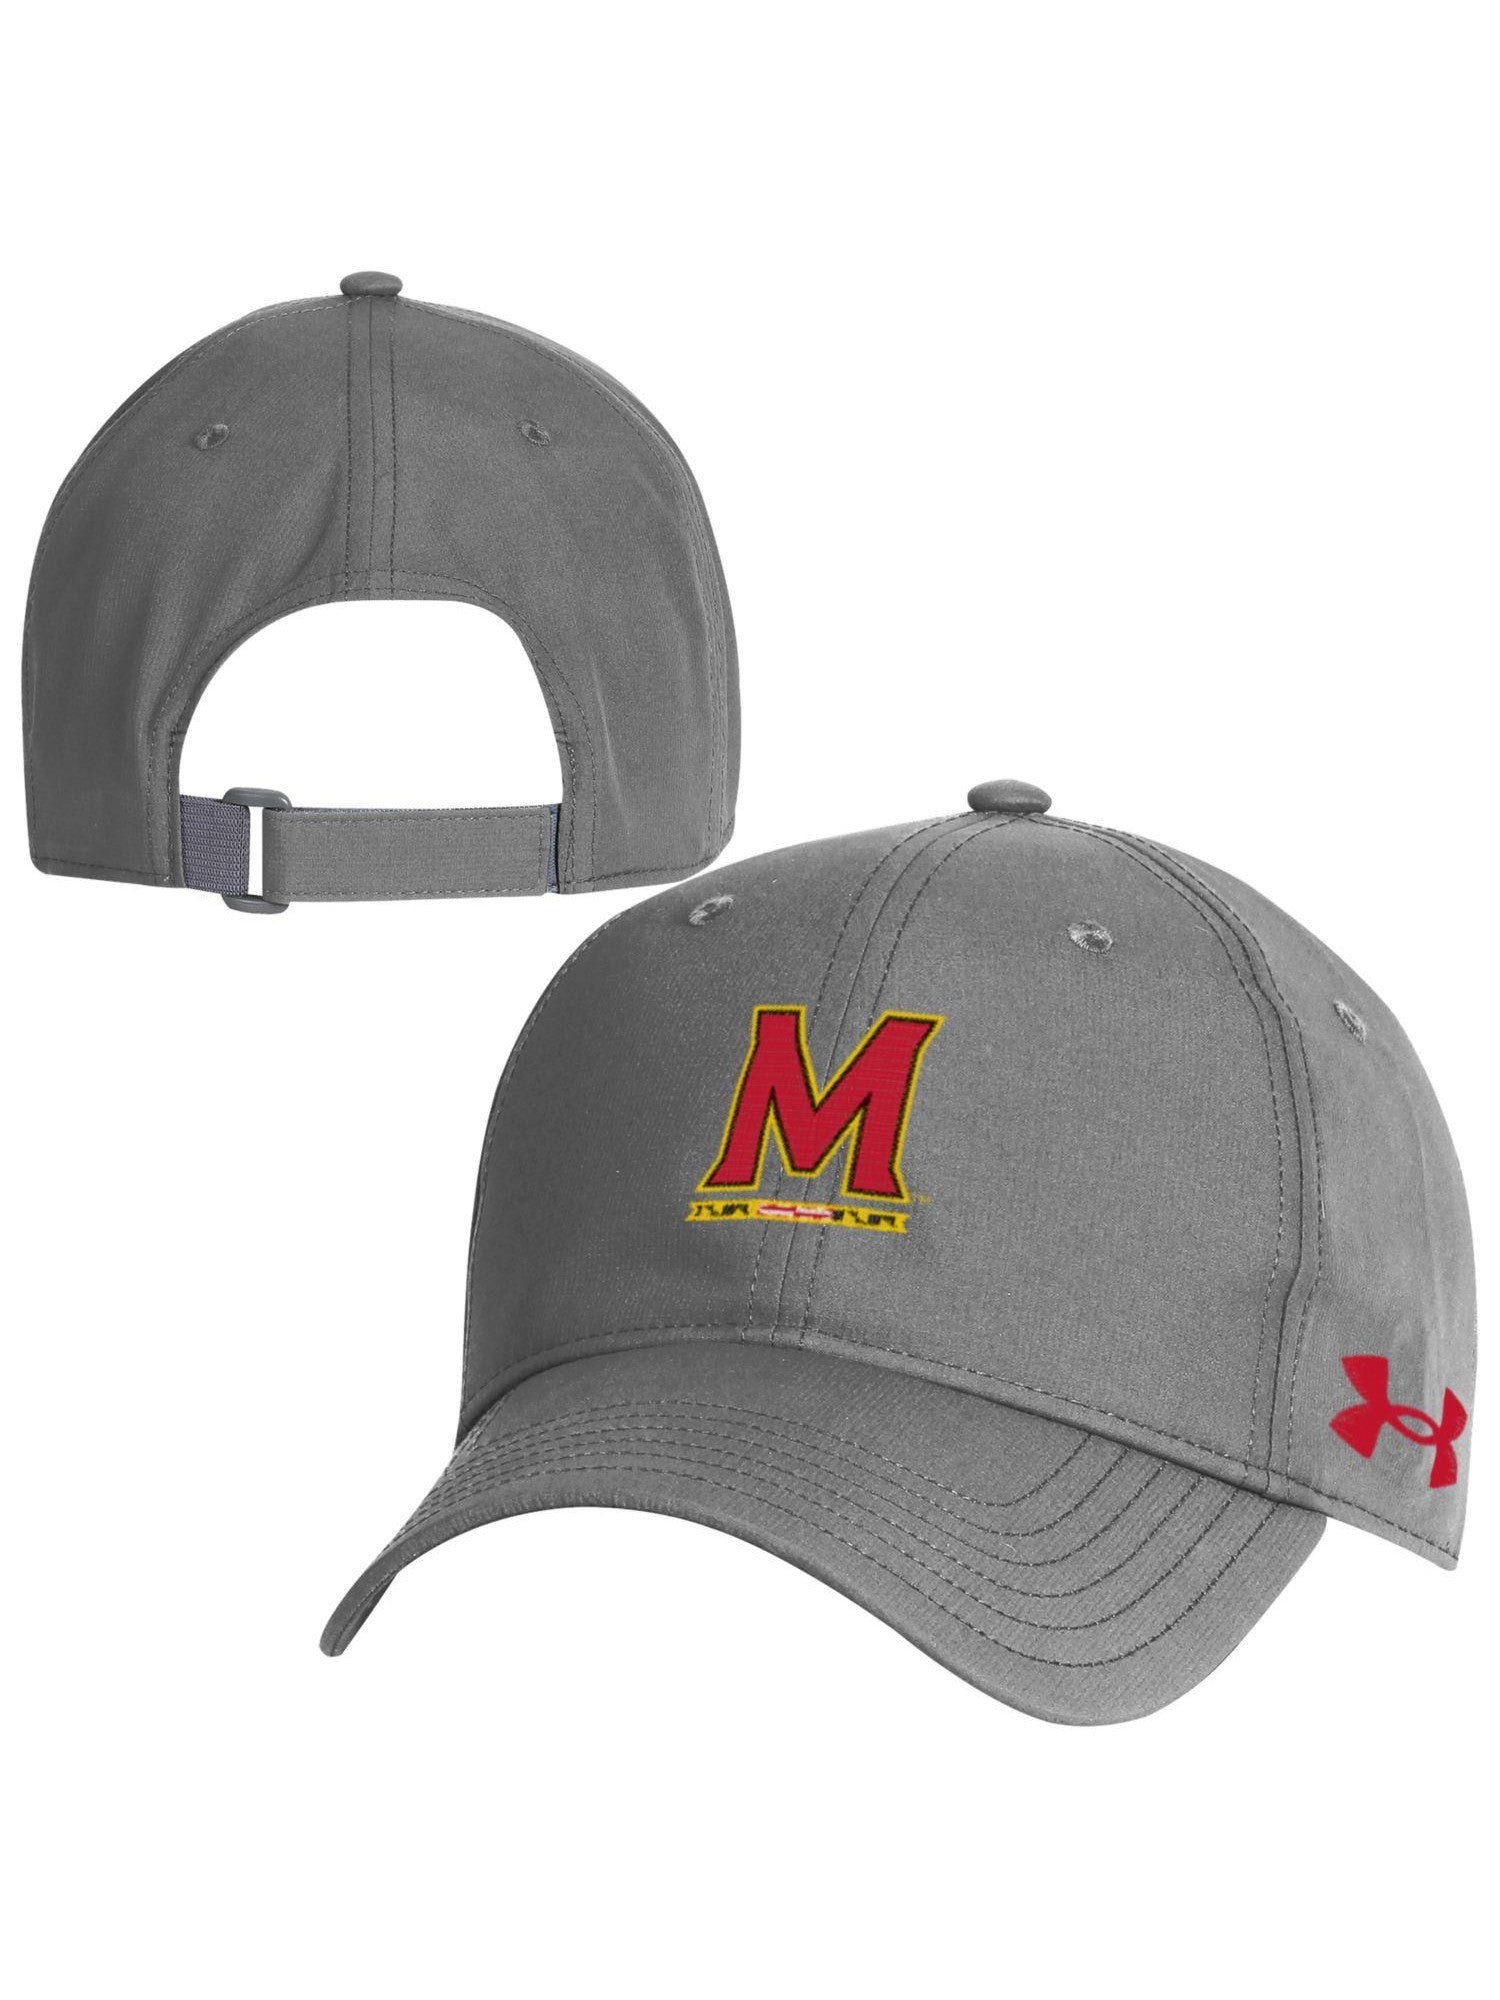 Under Armor Gifts Baseball of Maryland Cap (Grey) Maryland – University